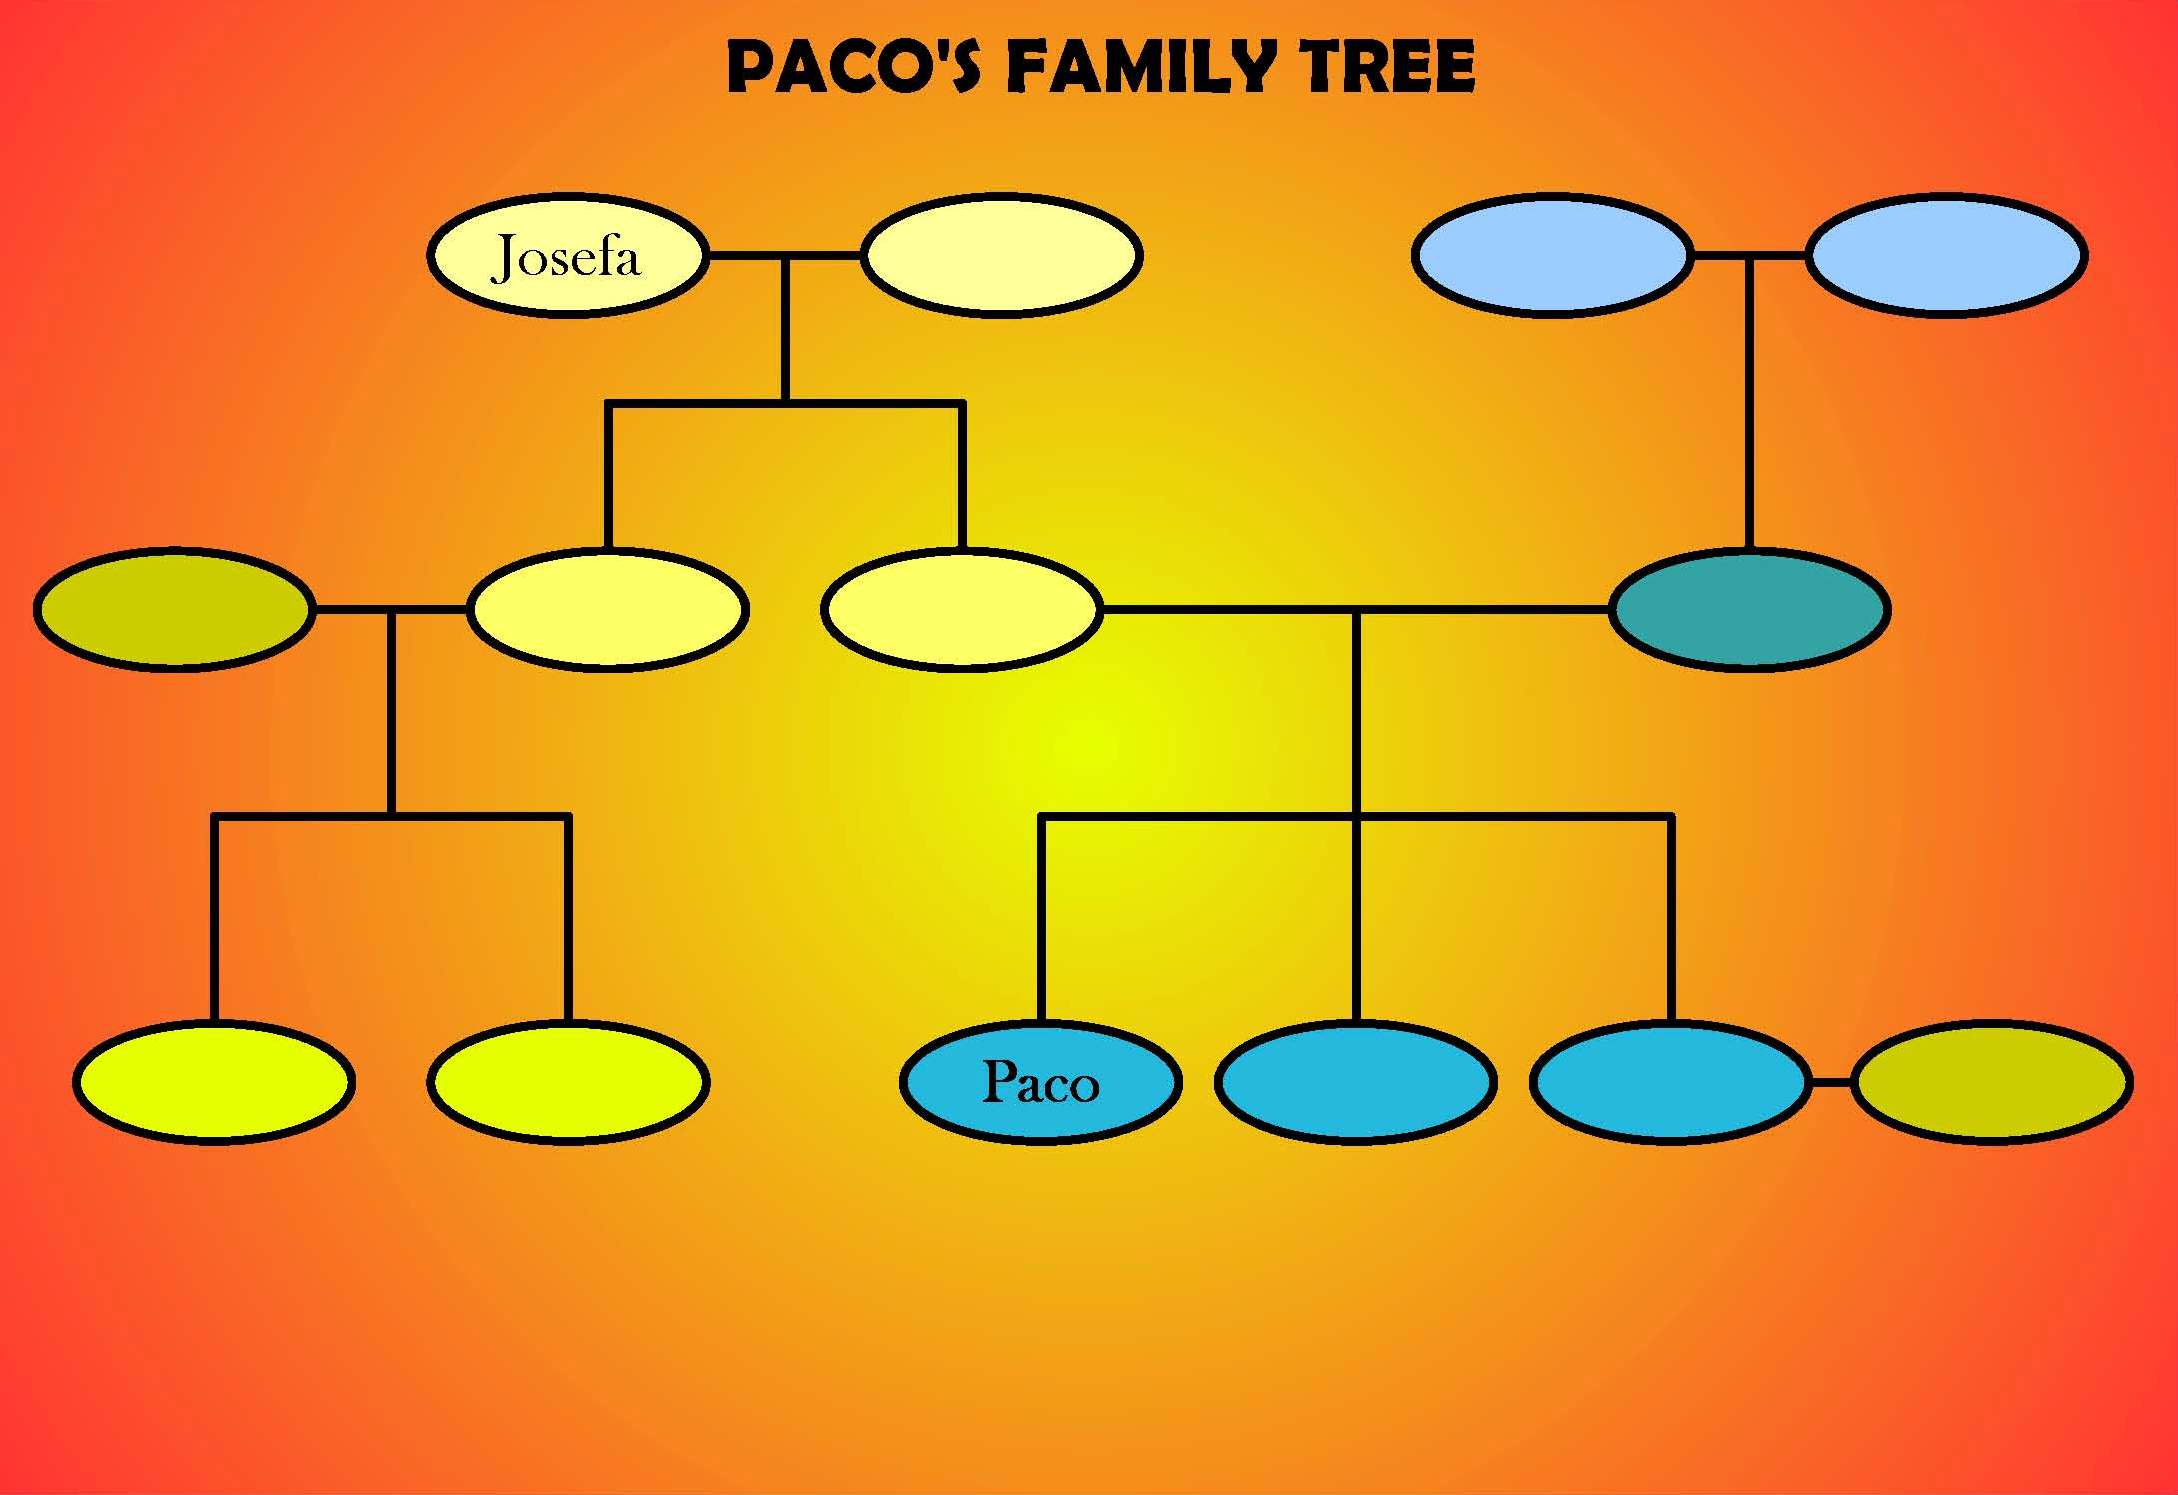 Paco's family tree